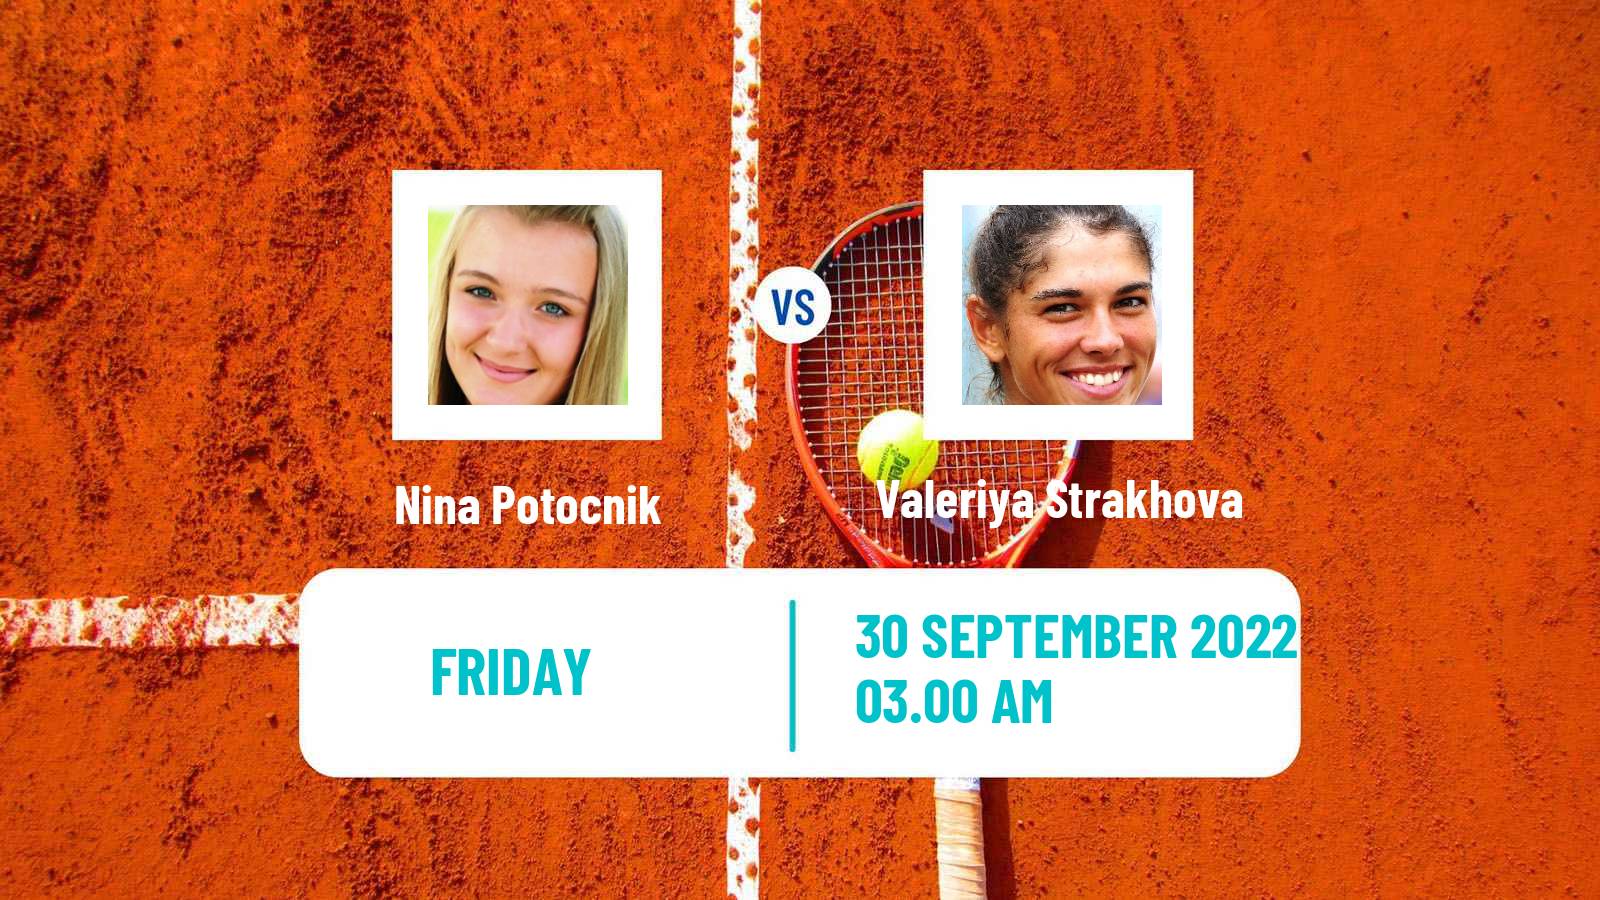 Tennis ITF Tournaments Nina Potocnik - Valeriya Strakhova